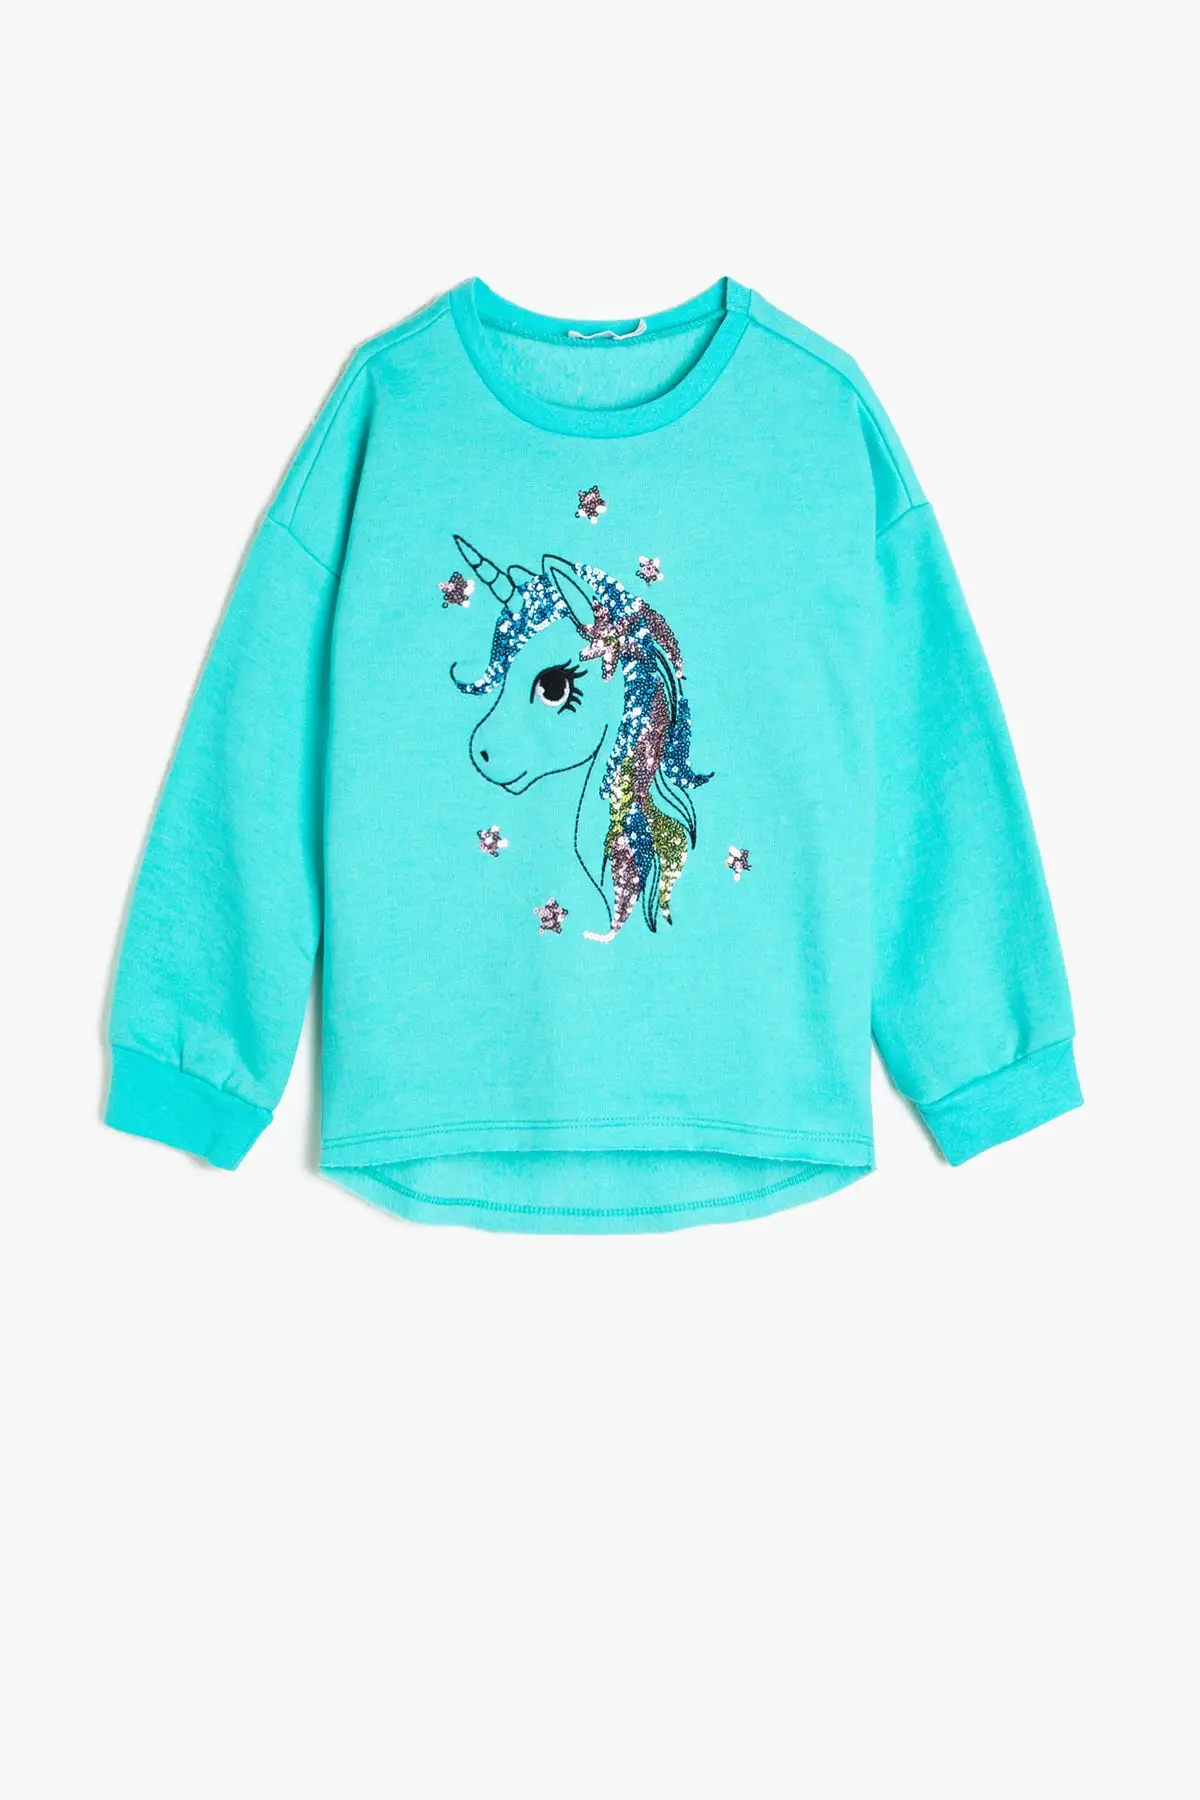 Детский Светильник Coton синий свитер для девочек |